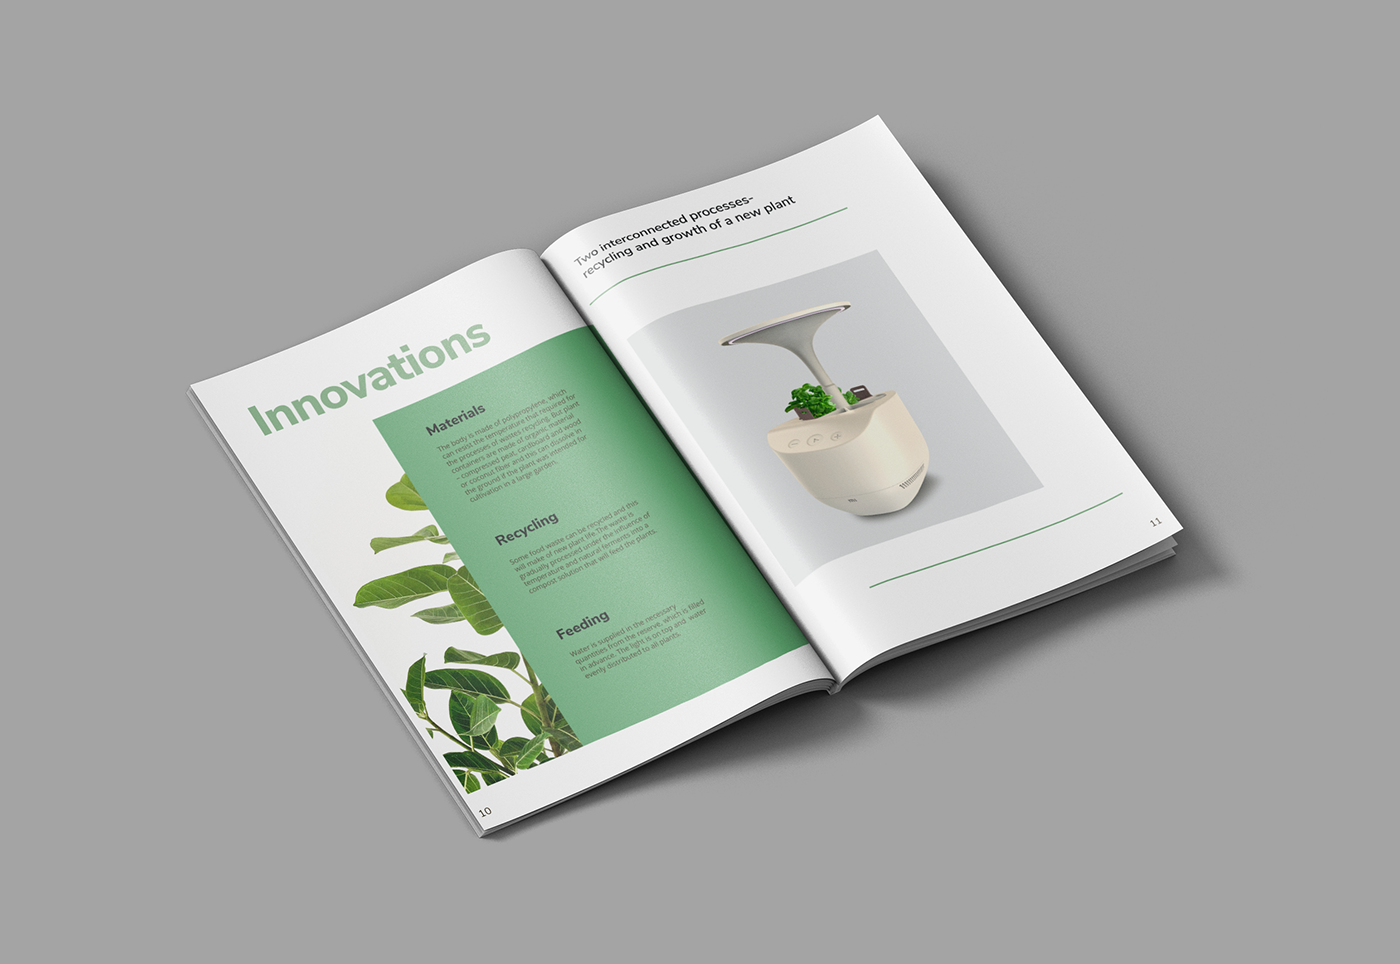 Layout smart garden graphic design  industrial design  plants herbs green magazine